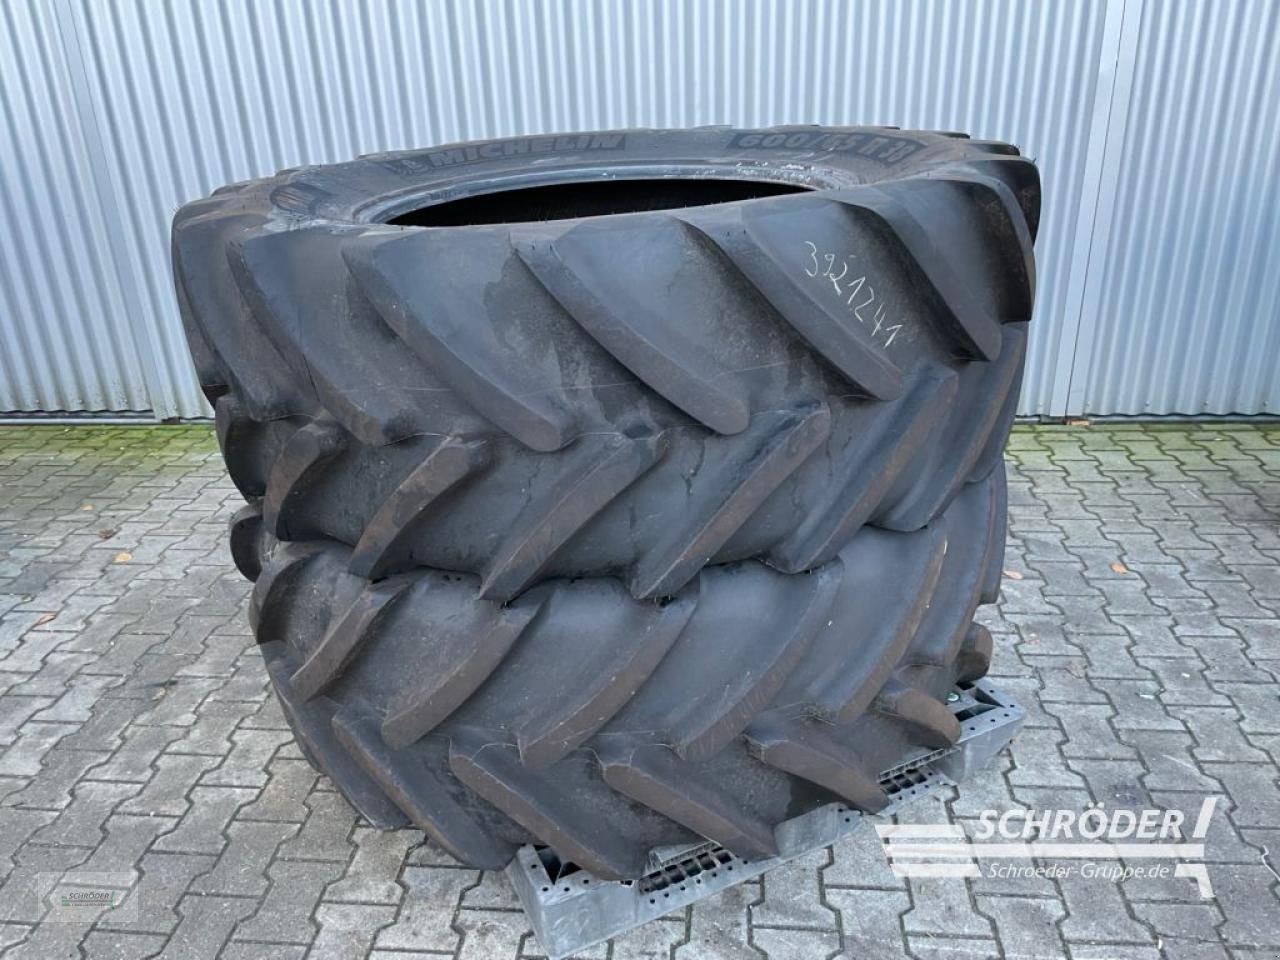 Rad des Typs Michelin 2X 600/65 R38, Gebrauchtmaschine in Wildeshausen (Bild 1)